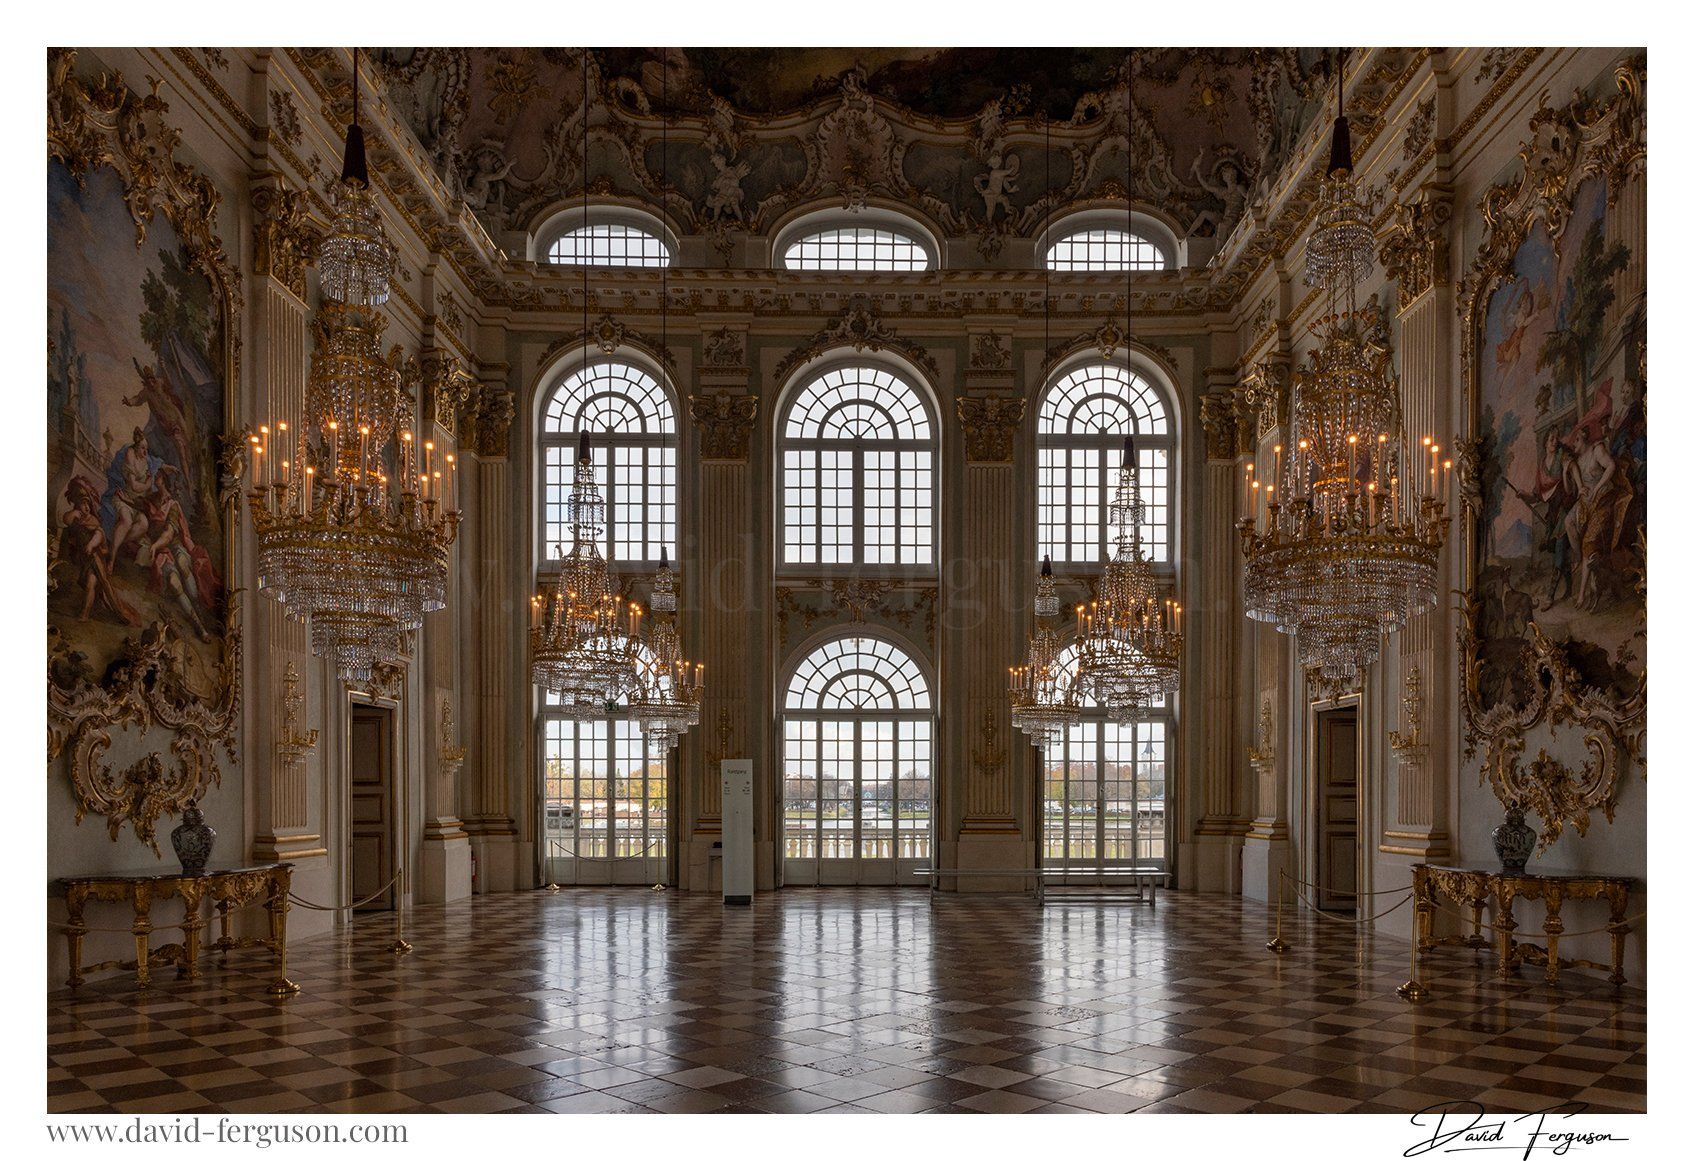 Nymphenburg Palace Munich Photo Gallery by David Ferguson